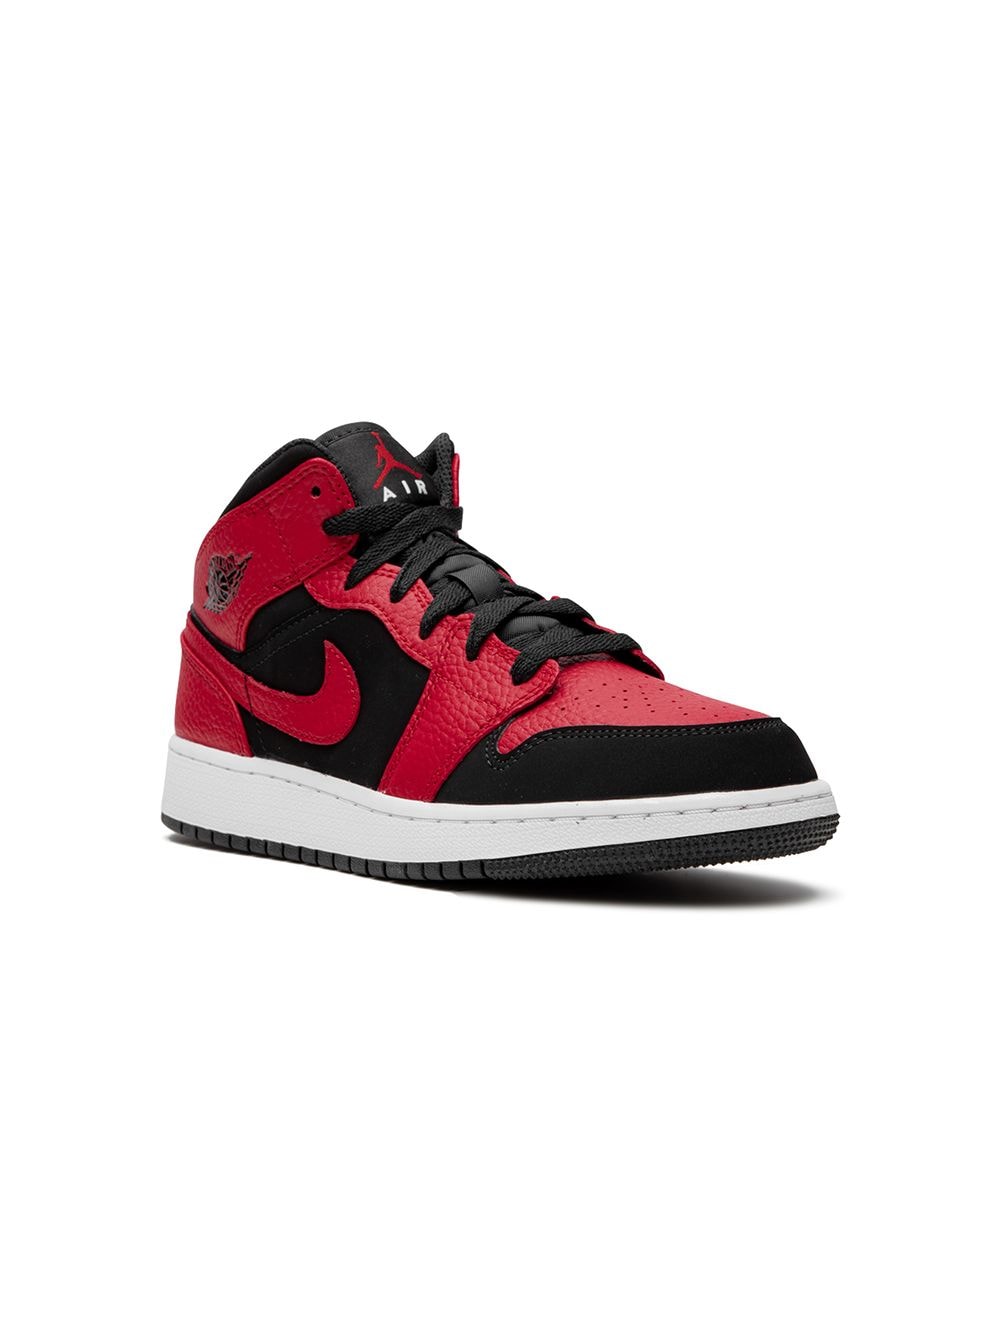 Image 1 of Jordan Kids Air Jordan 1 Mid "Reverse Bred" sneakers